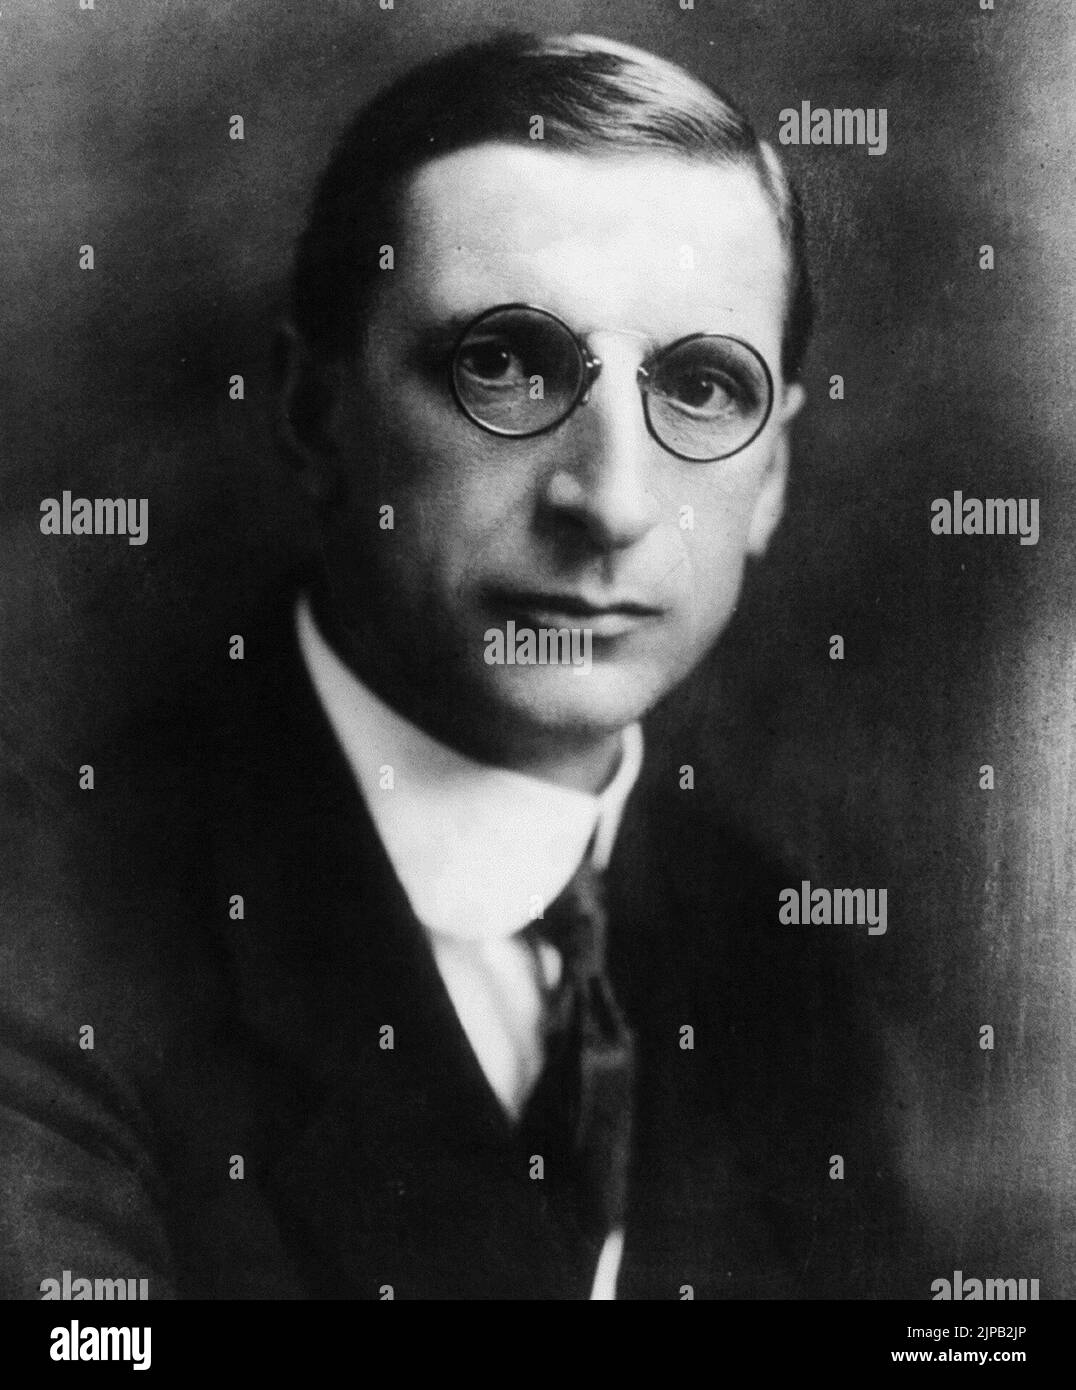 Éamon de Valera, der irische revolutionäre und politische Führer, um die 1920. Stockfoto